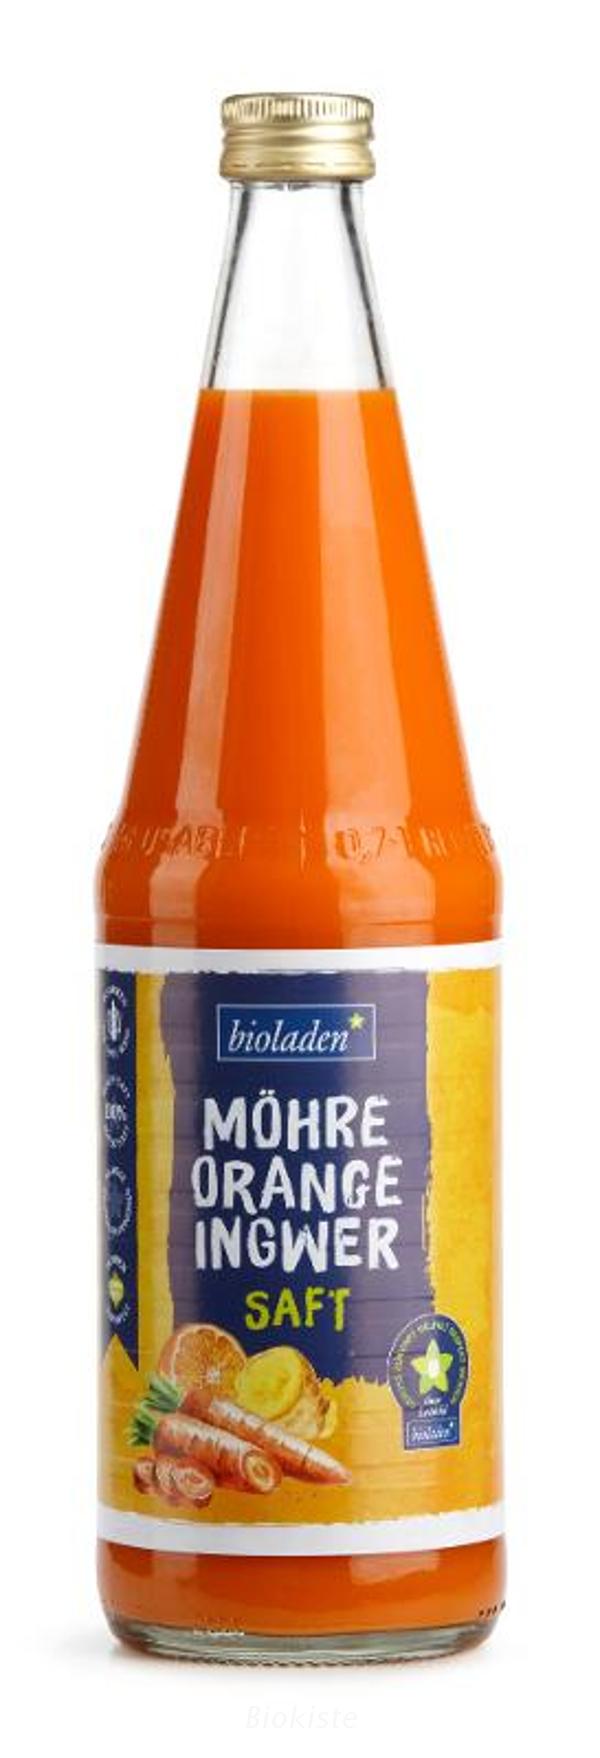 Produktfoto zu Möhre-Orange-Ingwer Saft 0,7